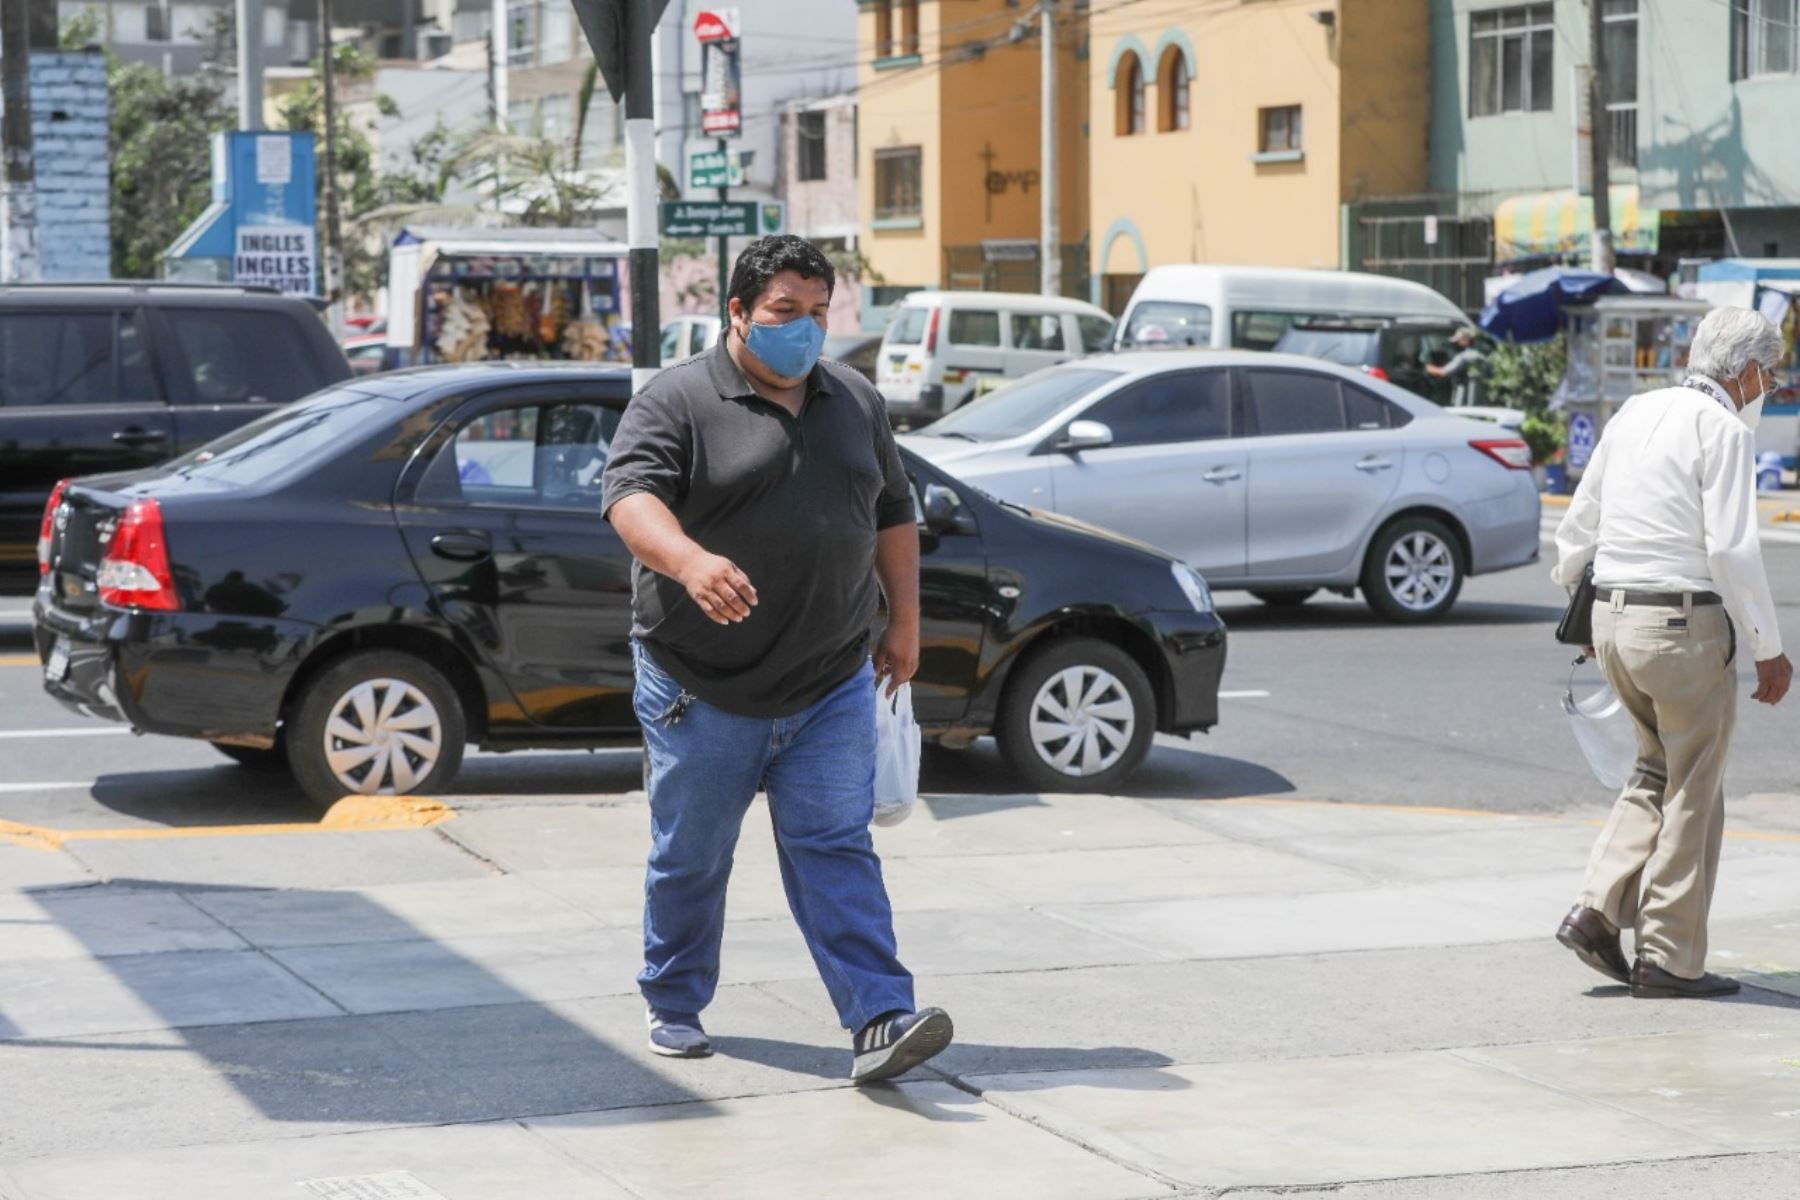 El 82% relaciona la obesidad con síntomas más severos del COVID-19, según resultados de la encuesta de Ipsos publicada hoy. Foto: ANDINA/ Essalud